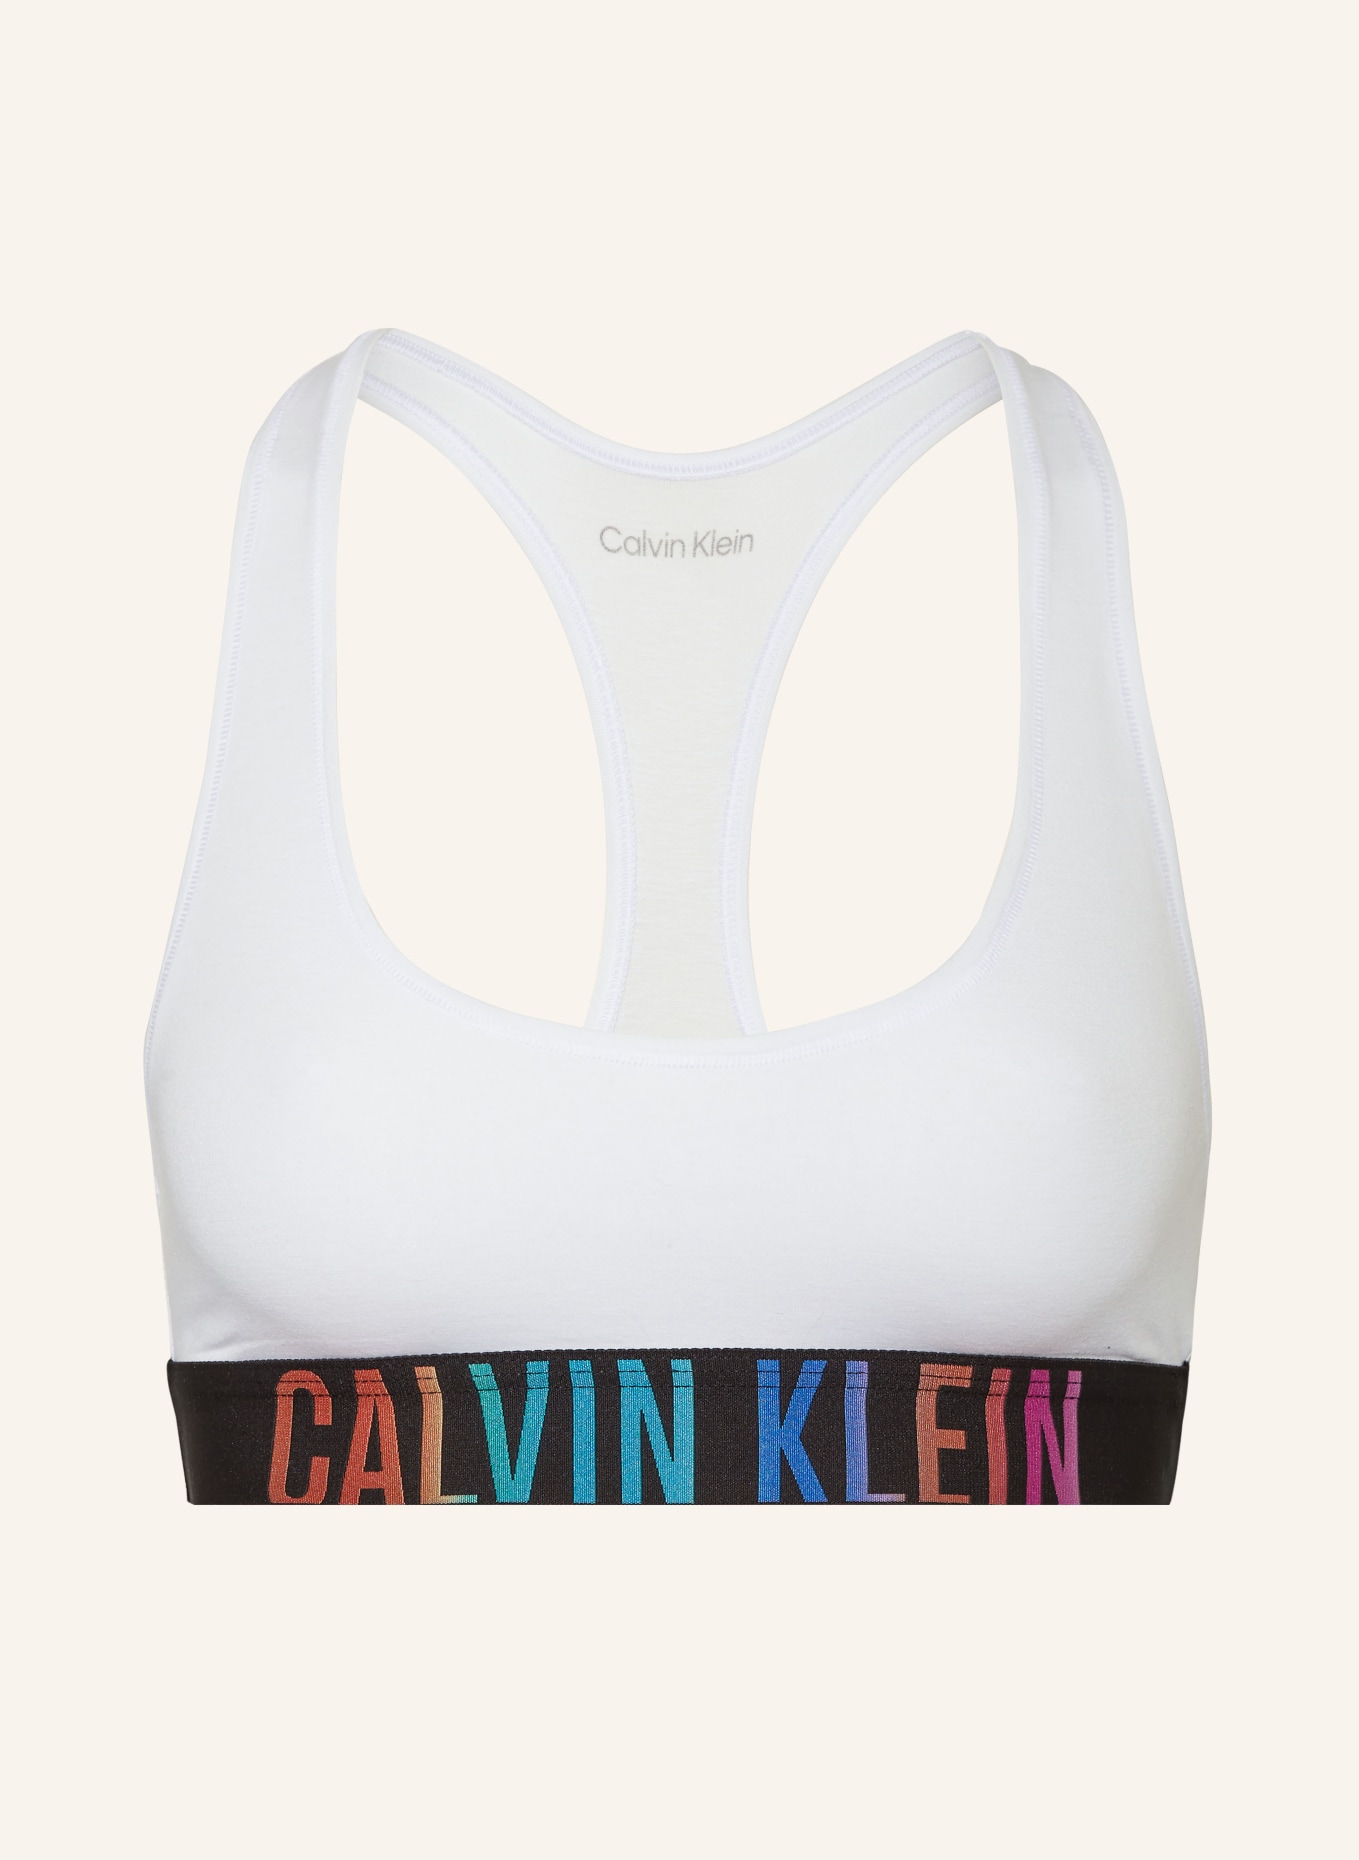 Calvin Klein Bustier INTENSE POWER, Farbe: WEISS (Bild 1)